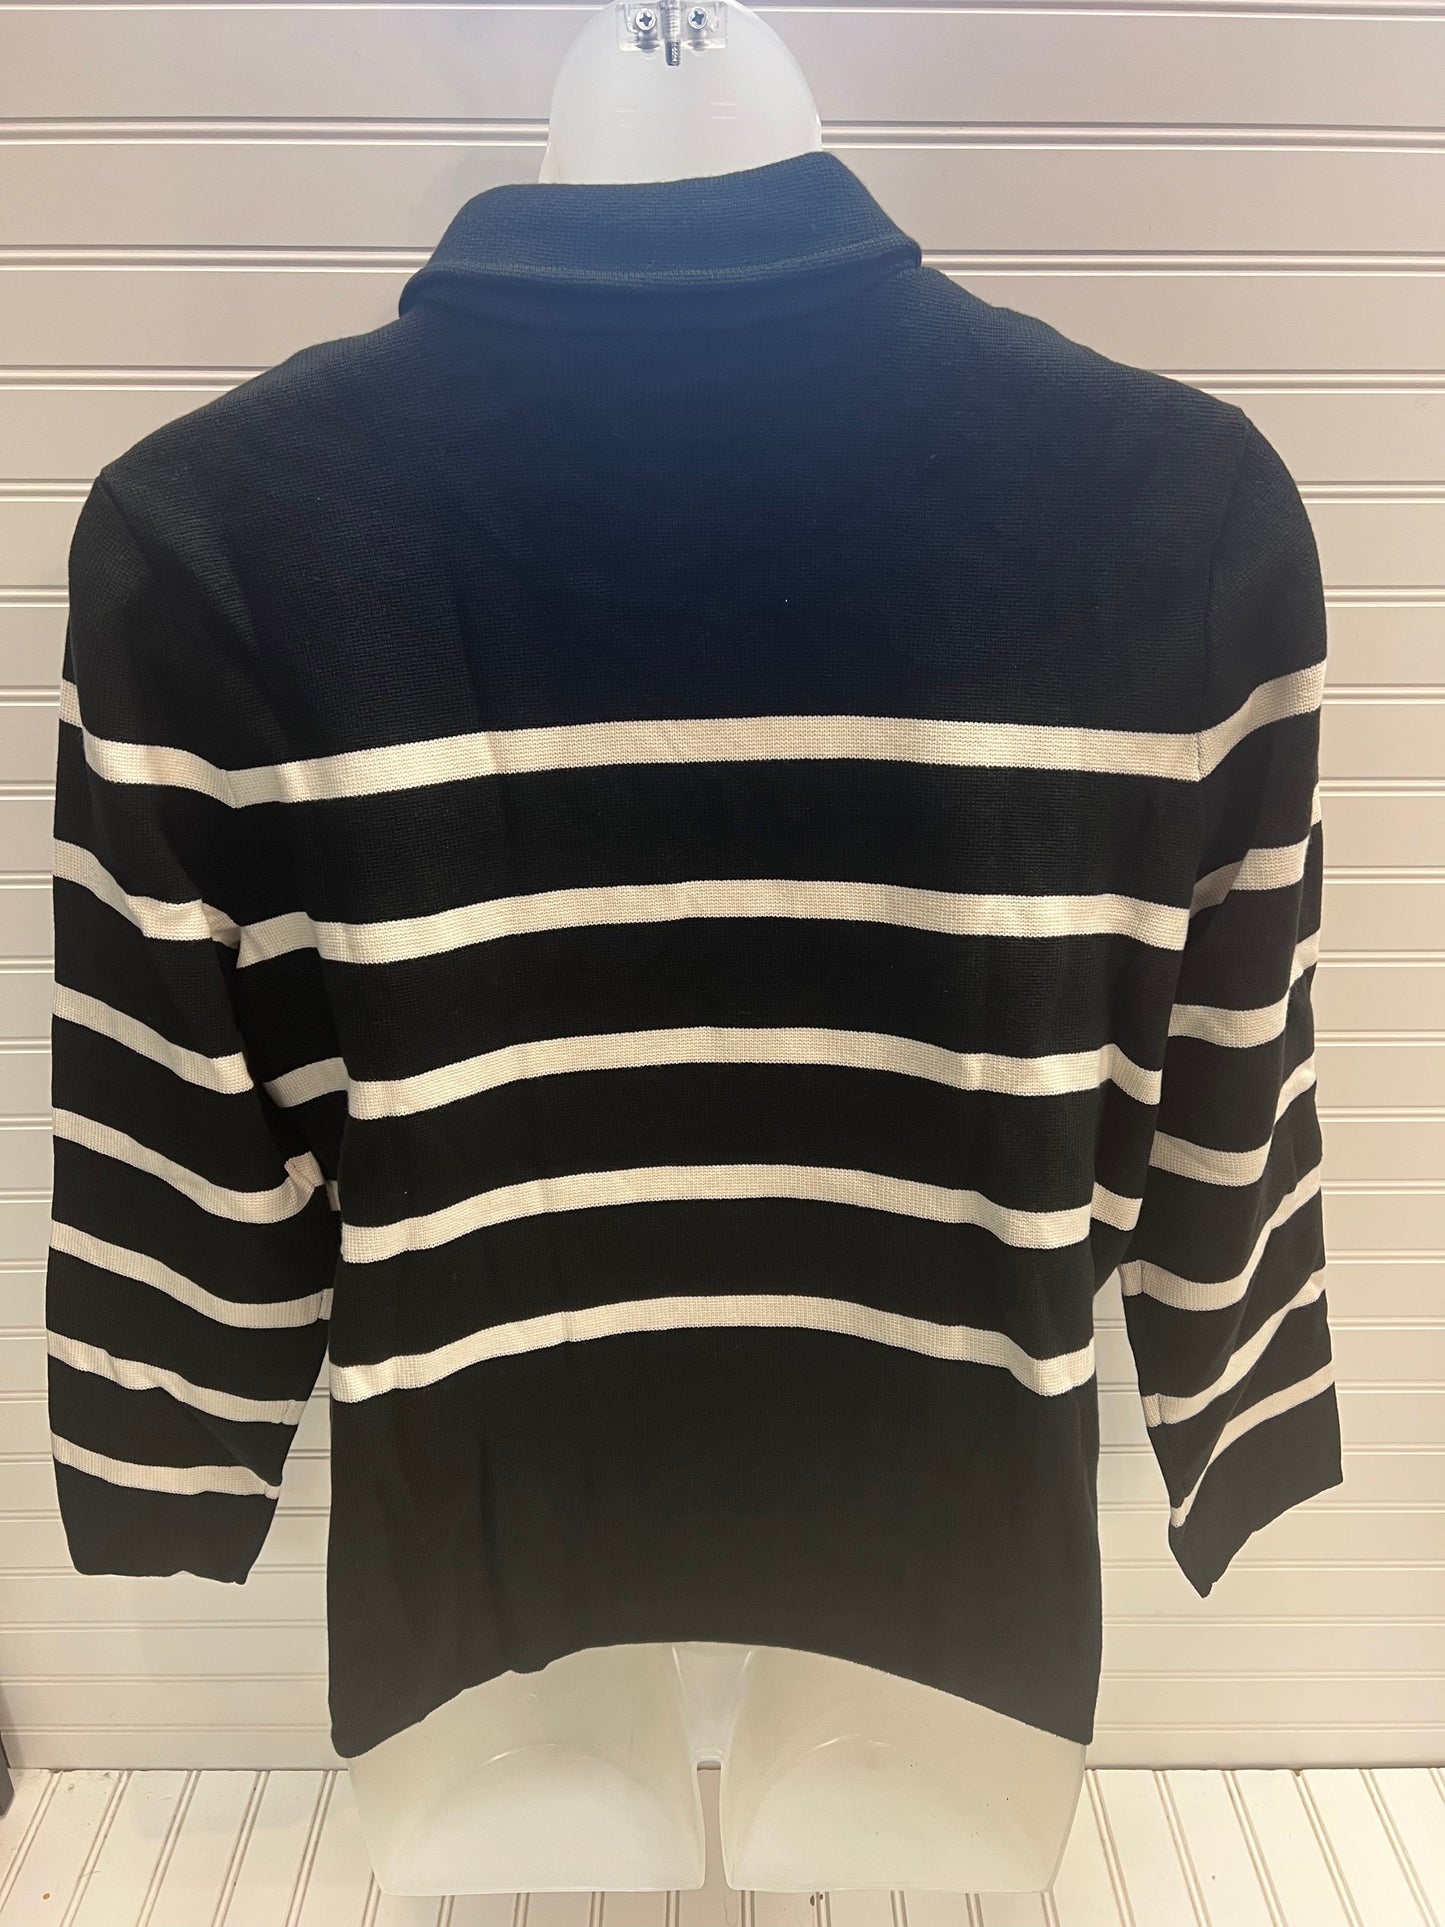 Sweater Cardigan Designer By Lauren By Ralph Lauren  Size: 3x